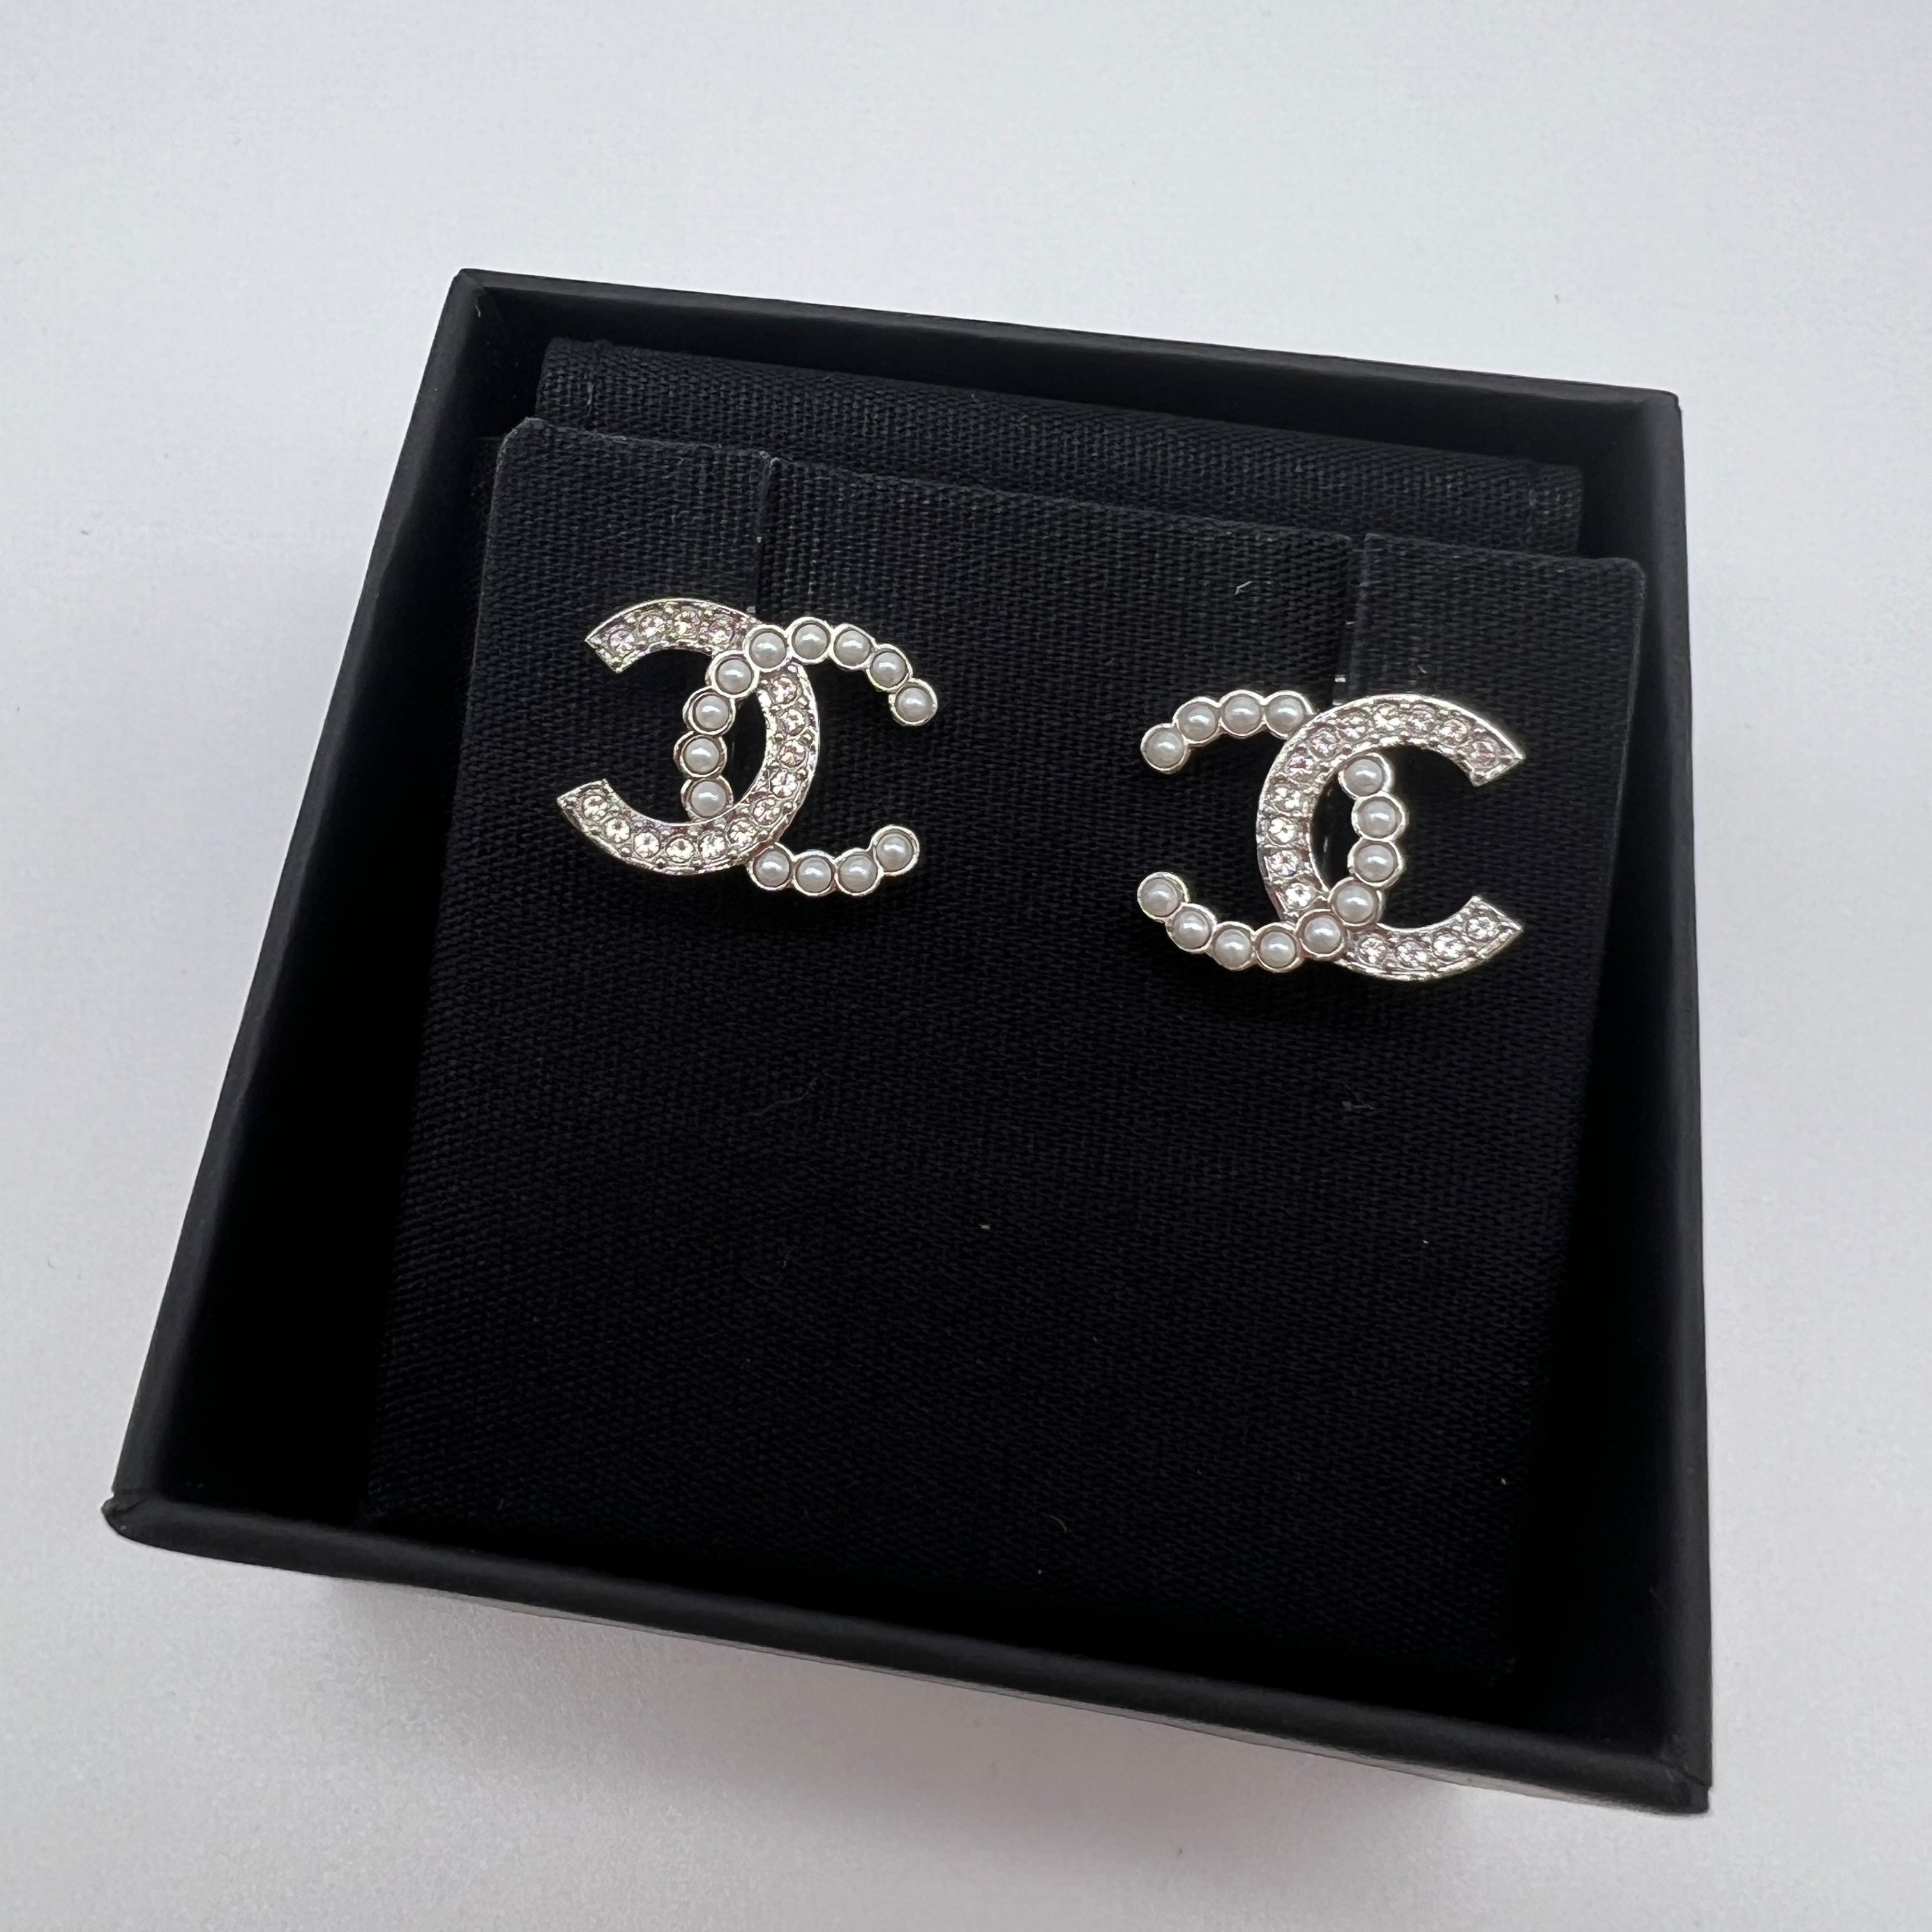 Hong Kong Stock - Chanel Earrings